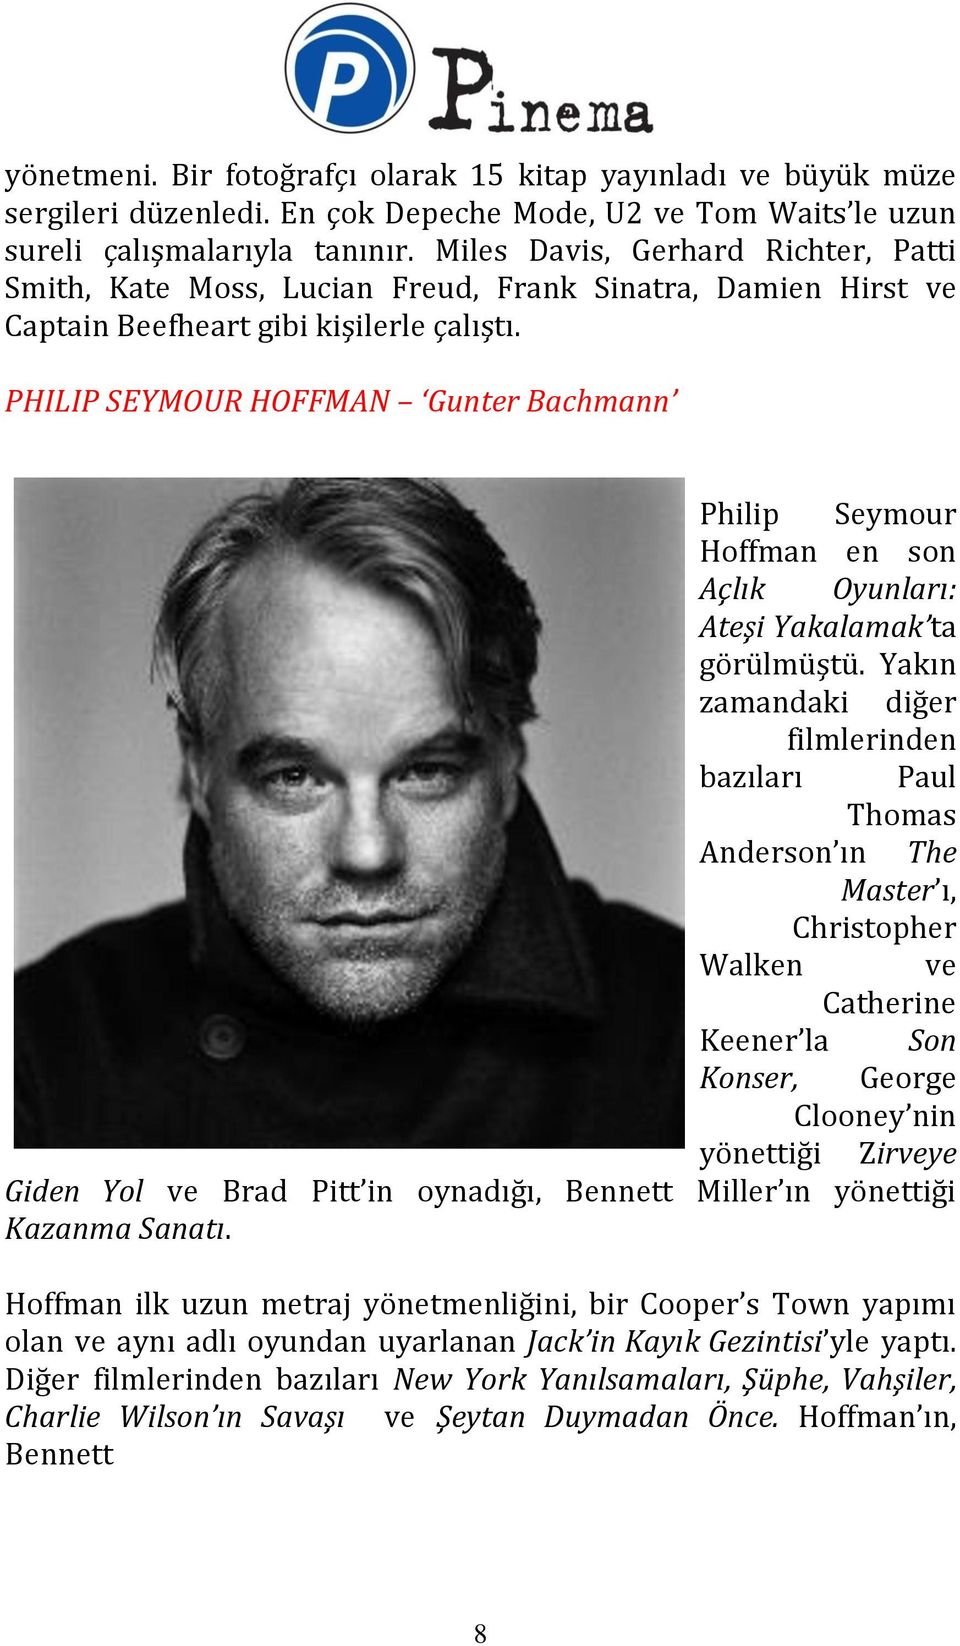 PHILIP SEYMOUR HOFFMAN Gunter Bachmann Philip Seymour Hoffman en son Açlık Oyunları: Ateşi Yakalamak ta görülmüştü.